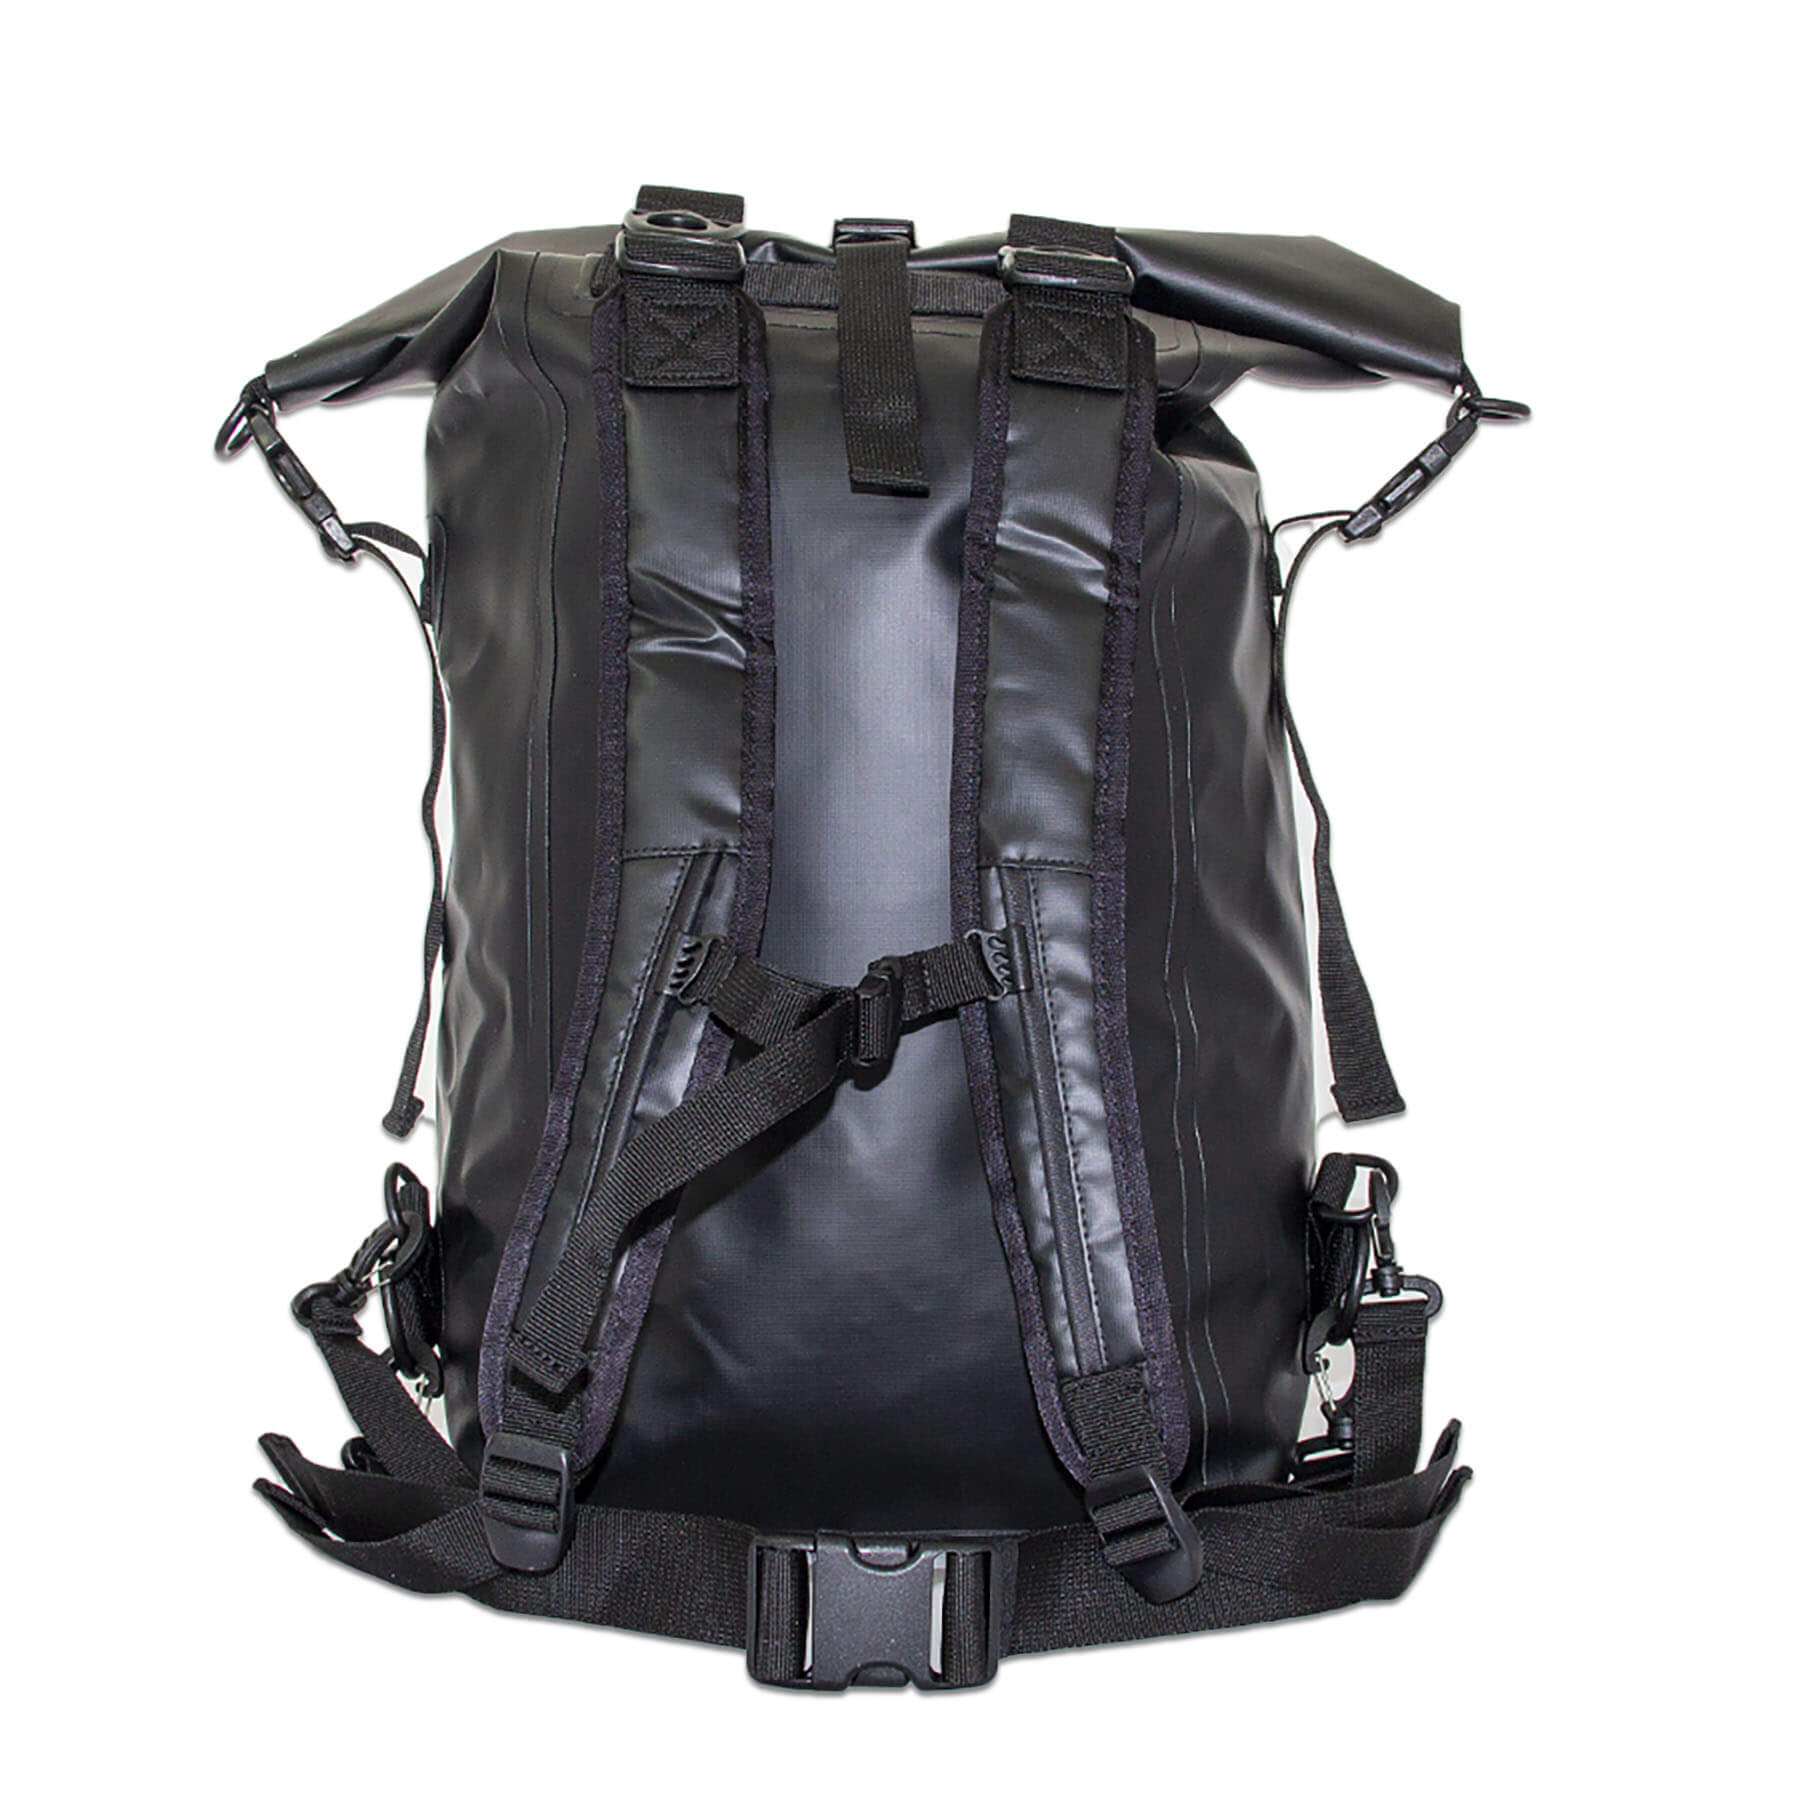 waterproof dry bag backpack 30 litres in black back view